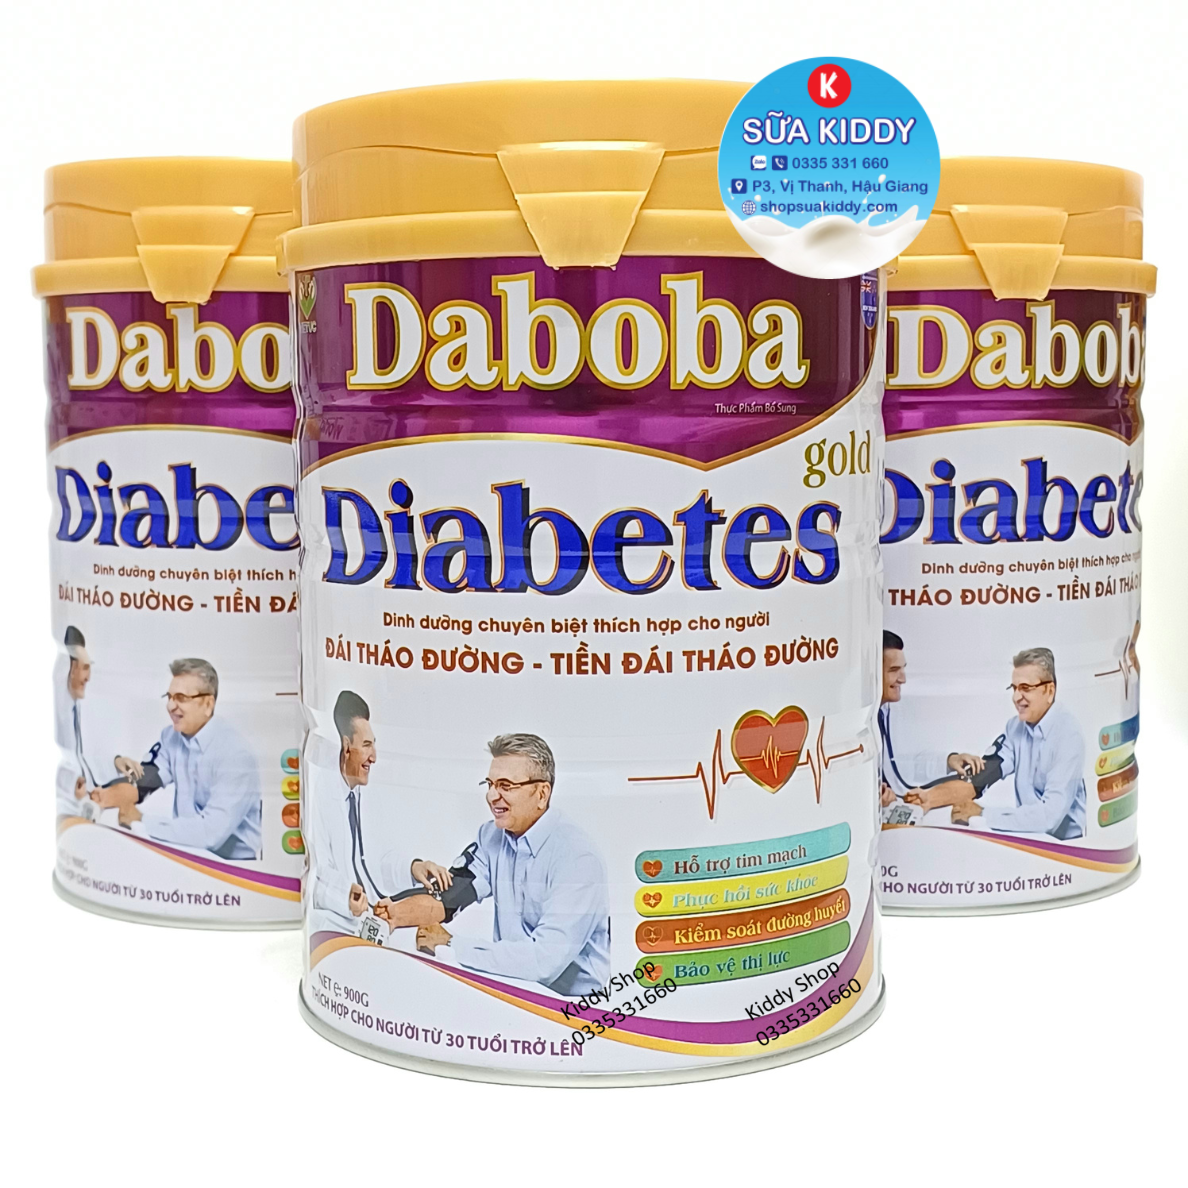 Sữa tiểu đường DABOBA DIABETES dinh dưỡng chuyên biệt thích hợp cho người